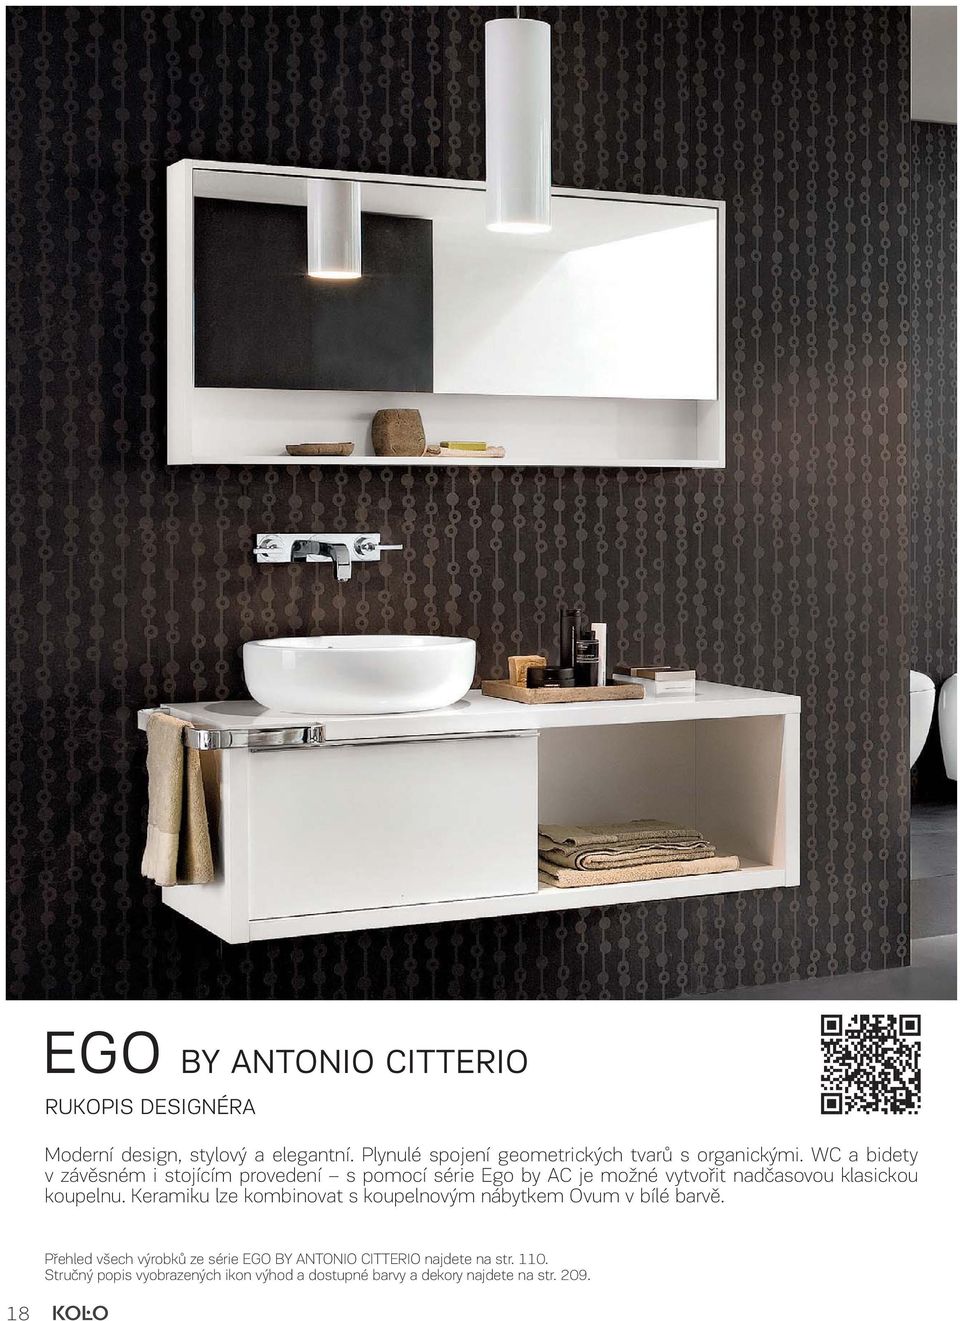 WC a bidety v závěsném i stojícím provedení s pomocí série Ego by AC je možné vytvořit nadčasovou klasickou koupelnu.